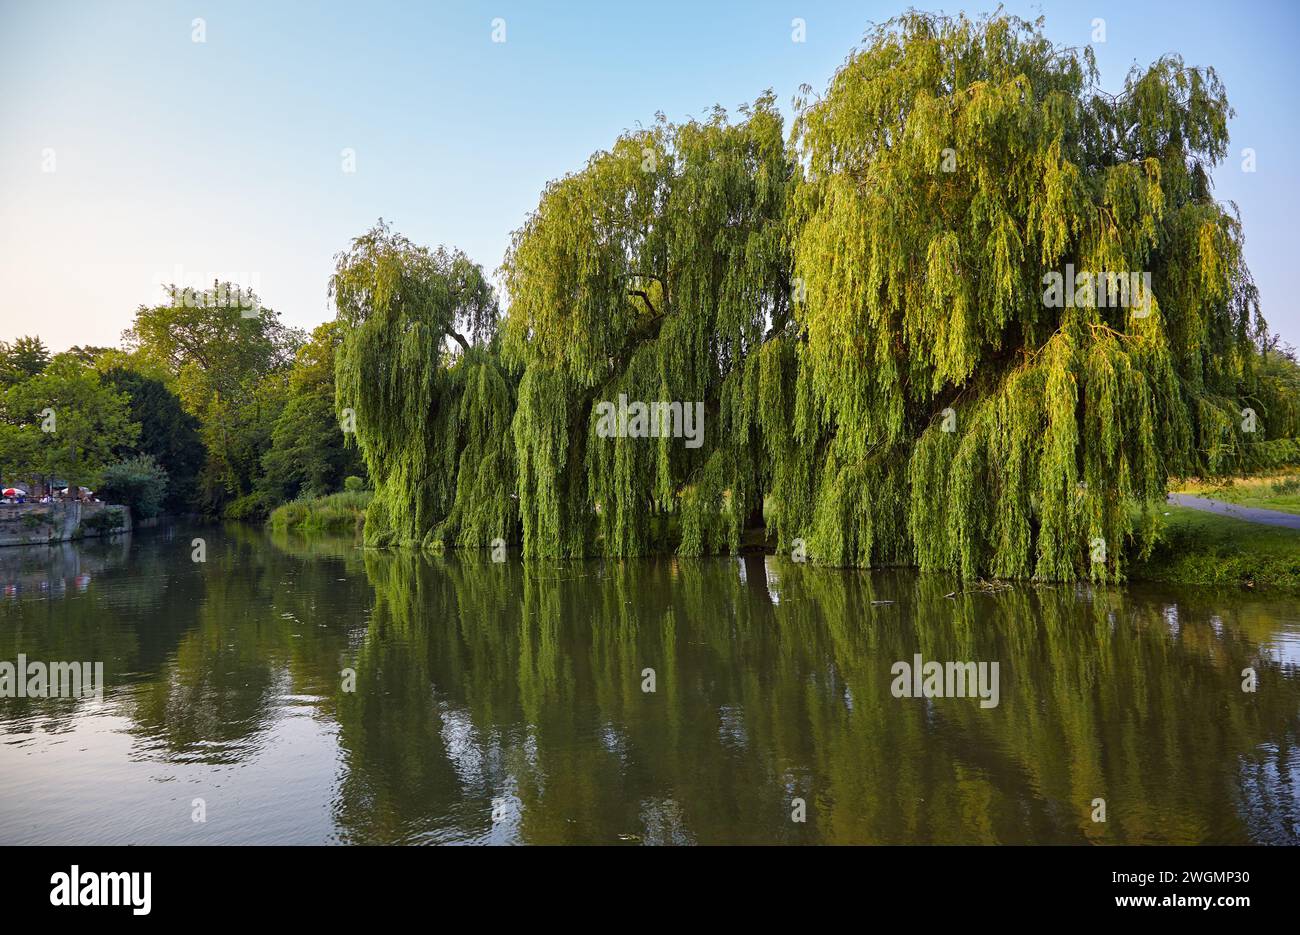 La vue sur l'immense beau saule pleureur (Salix babylonica ou saule Babylon) sur la rivière Banks Cam. Cambridge. Cambridgeshire. Royaume-Uni Banque D'Images